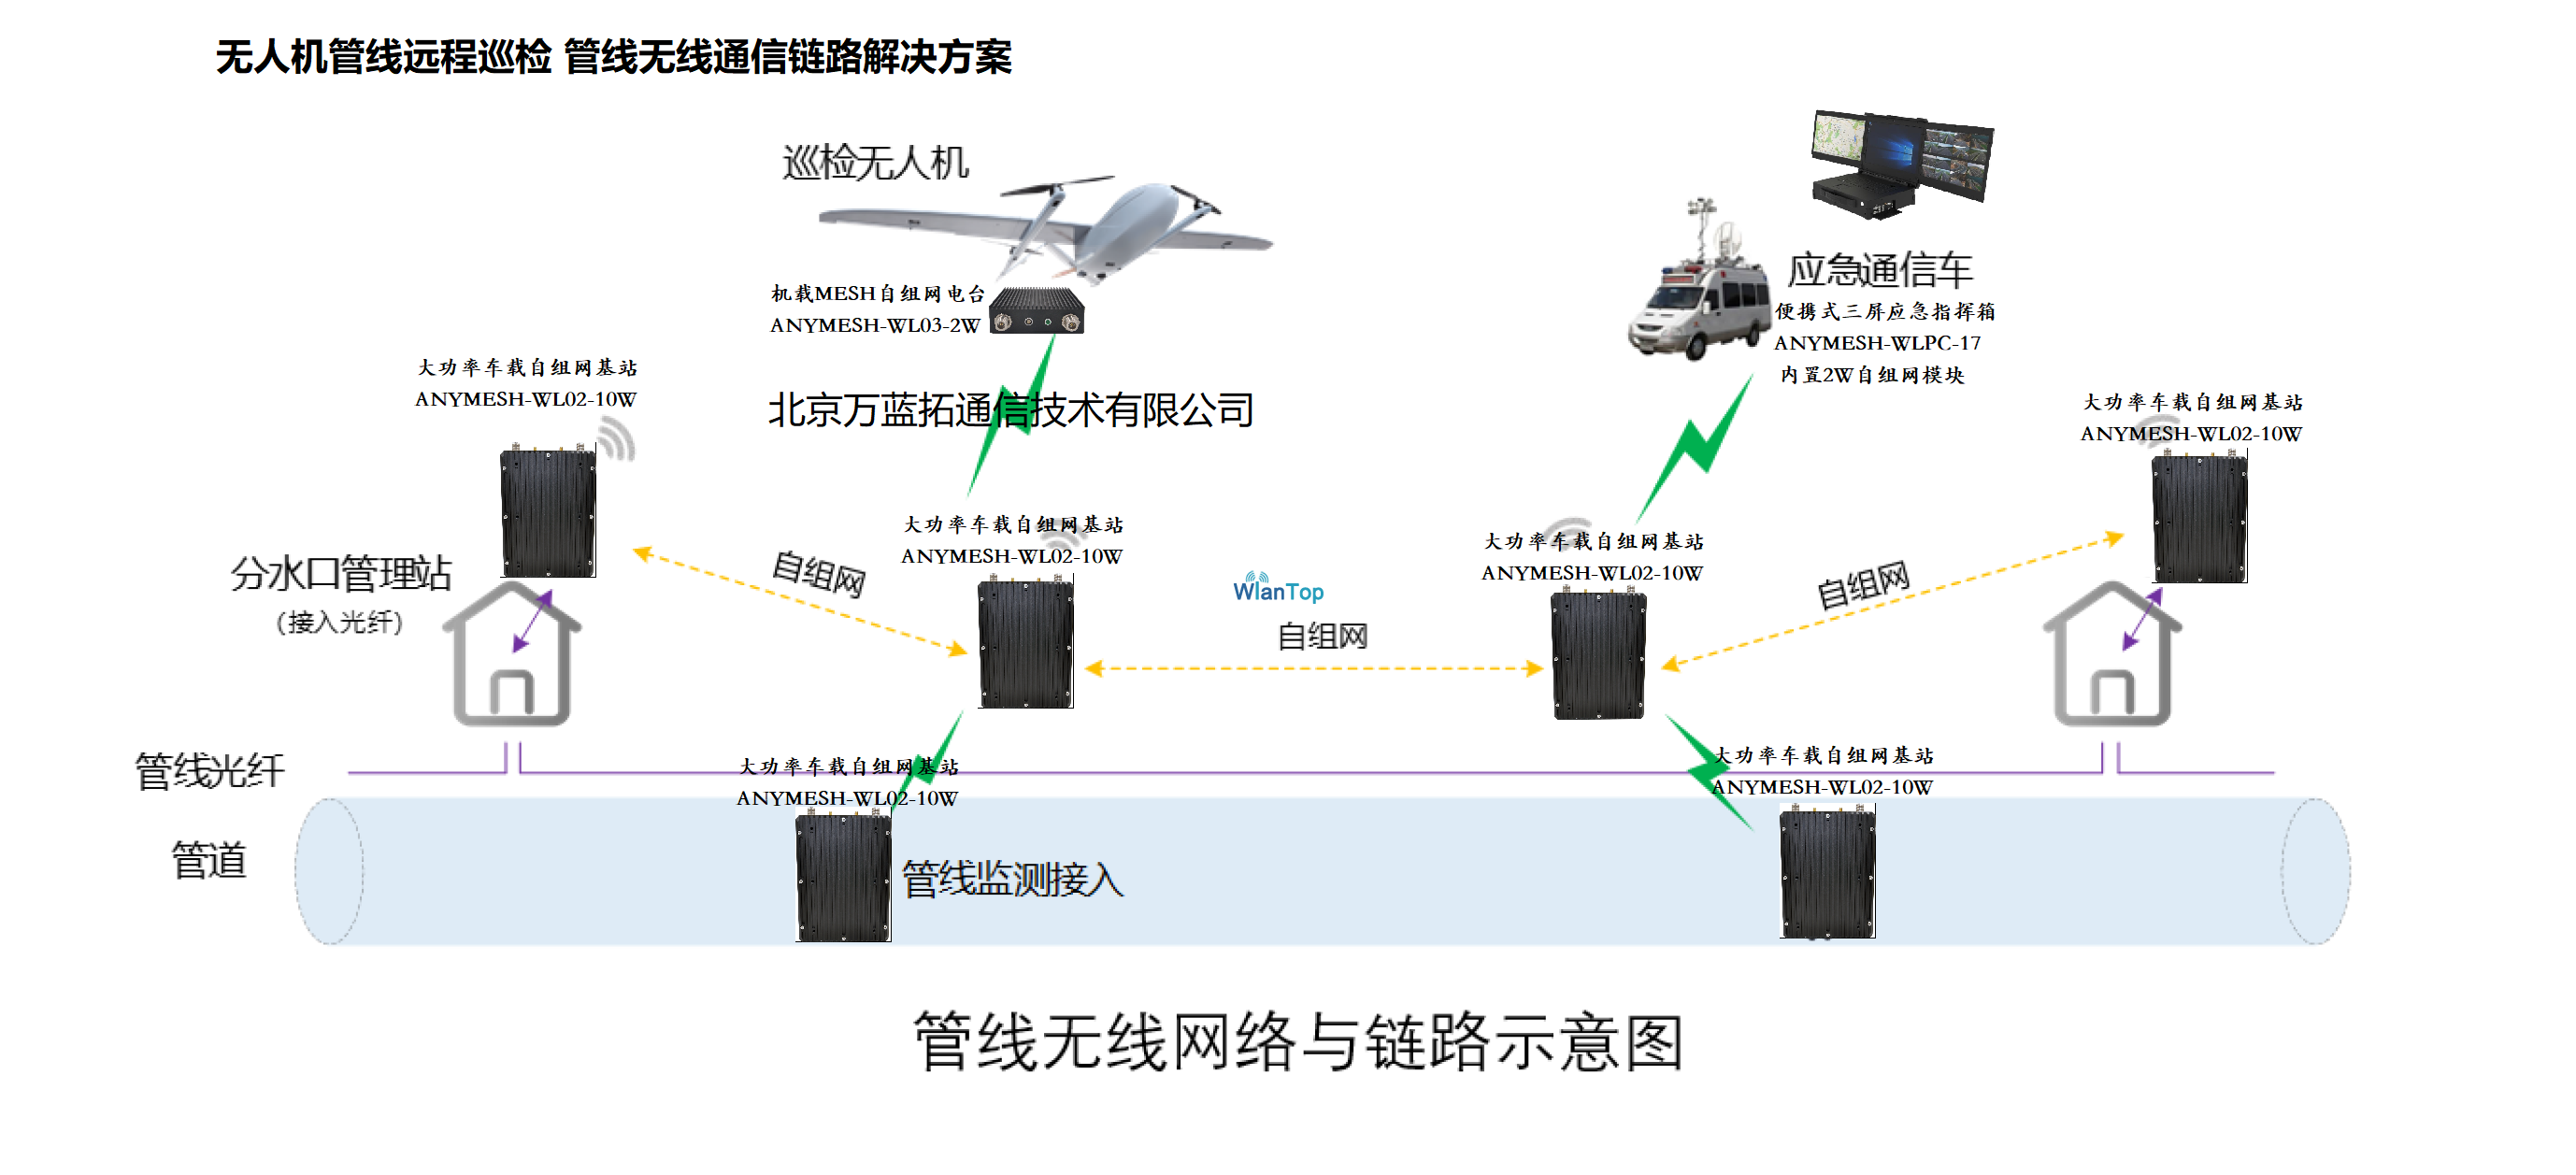 无人机管线远程巡检无线MESH自组网通信链路解决